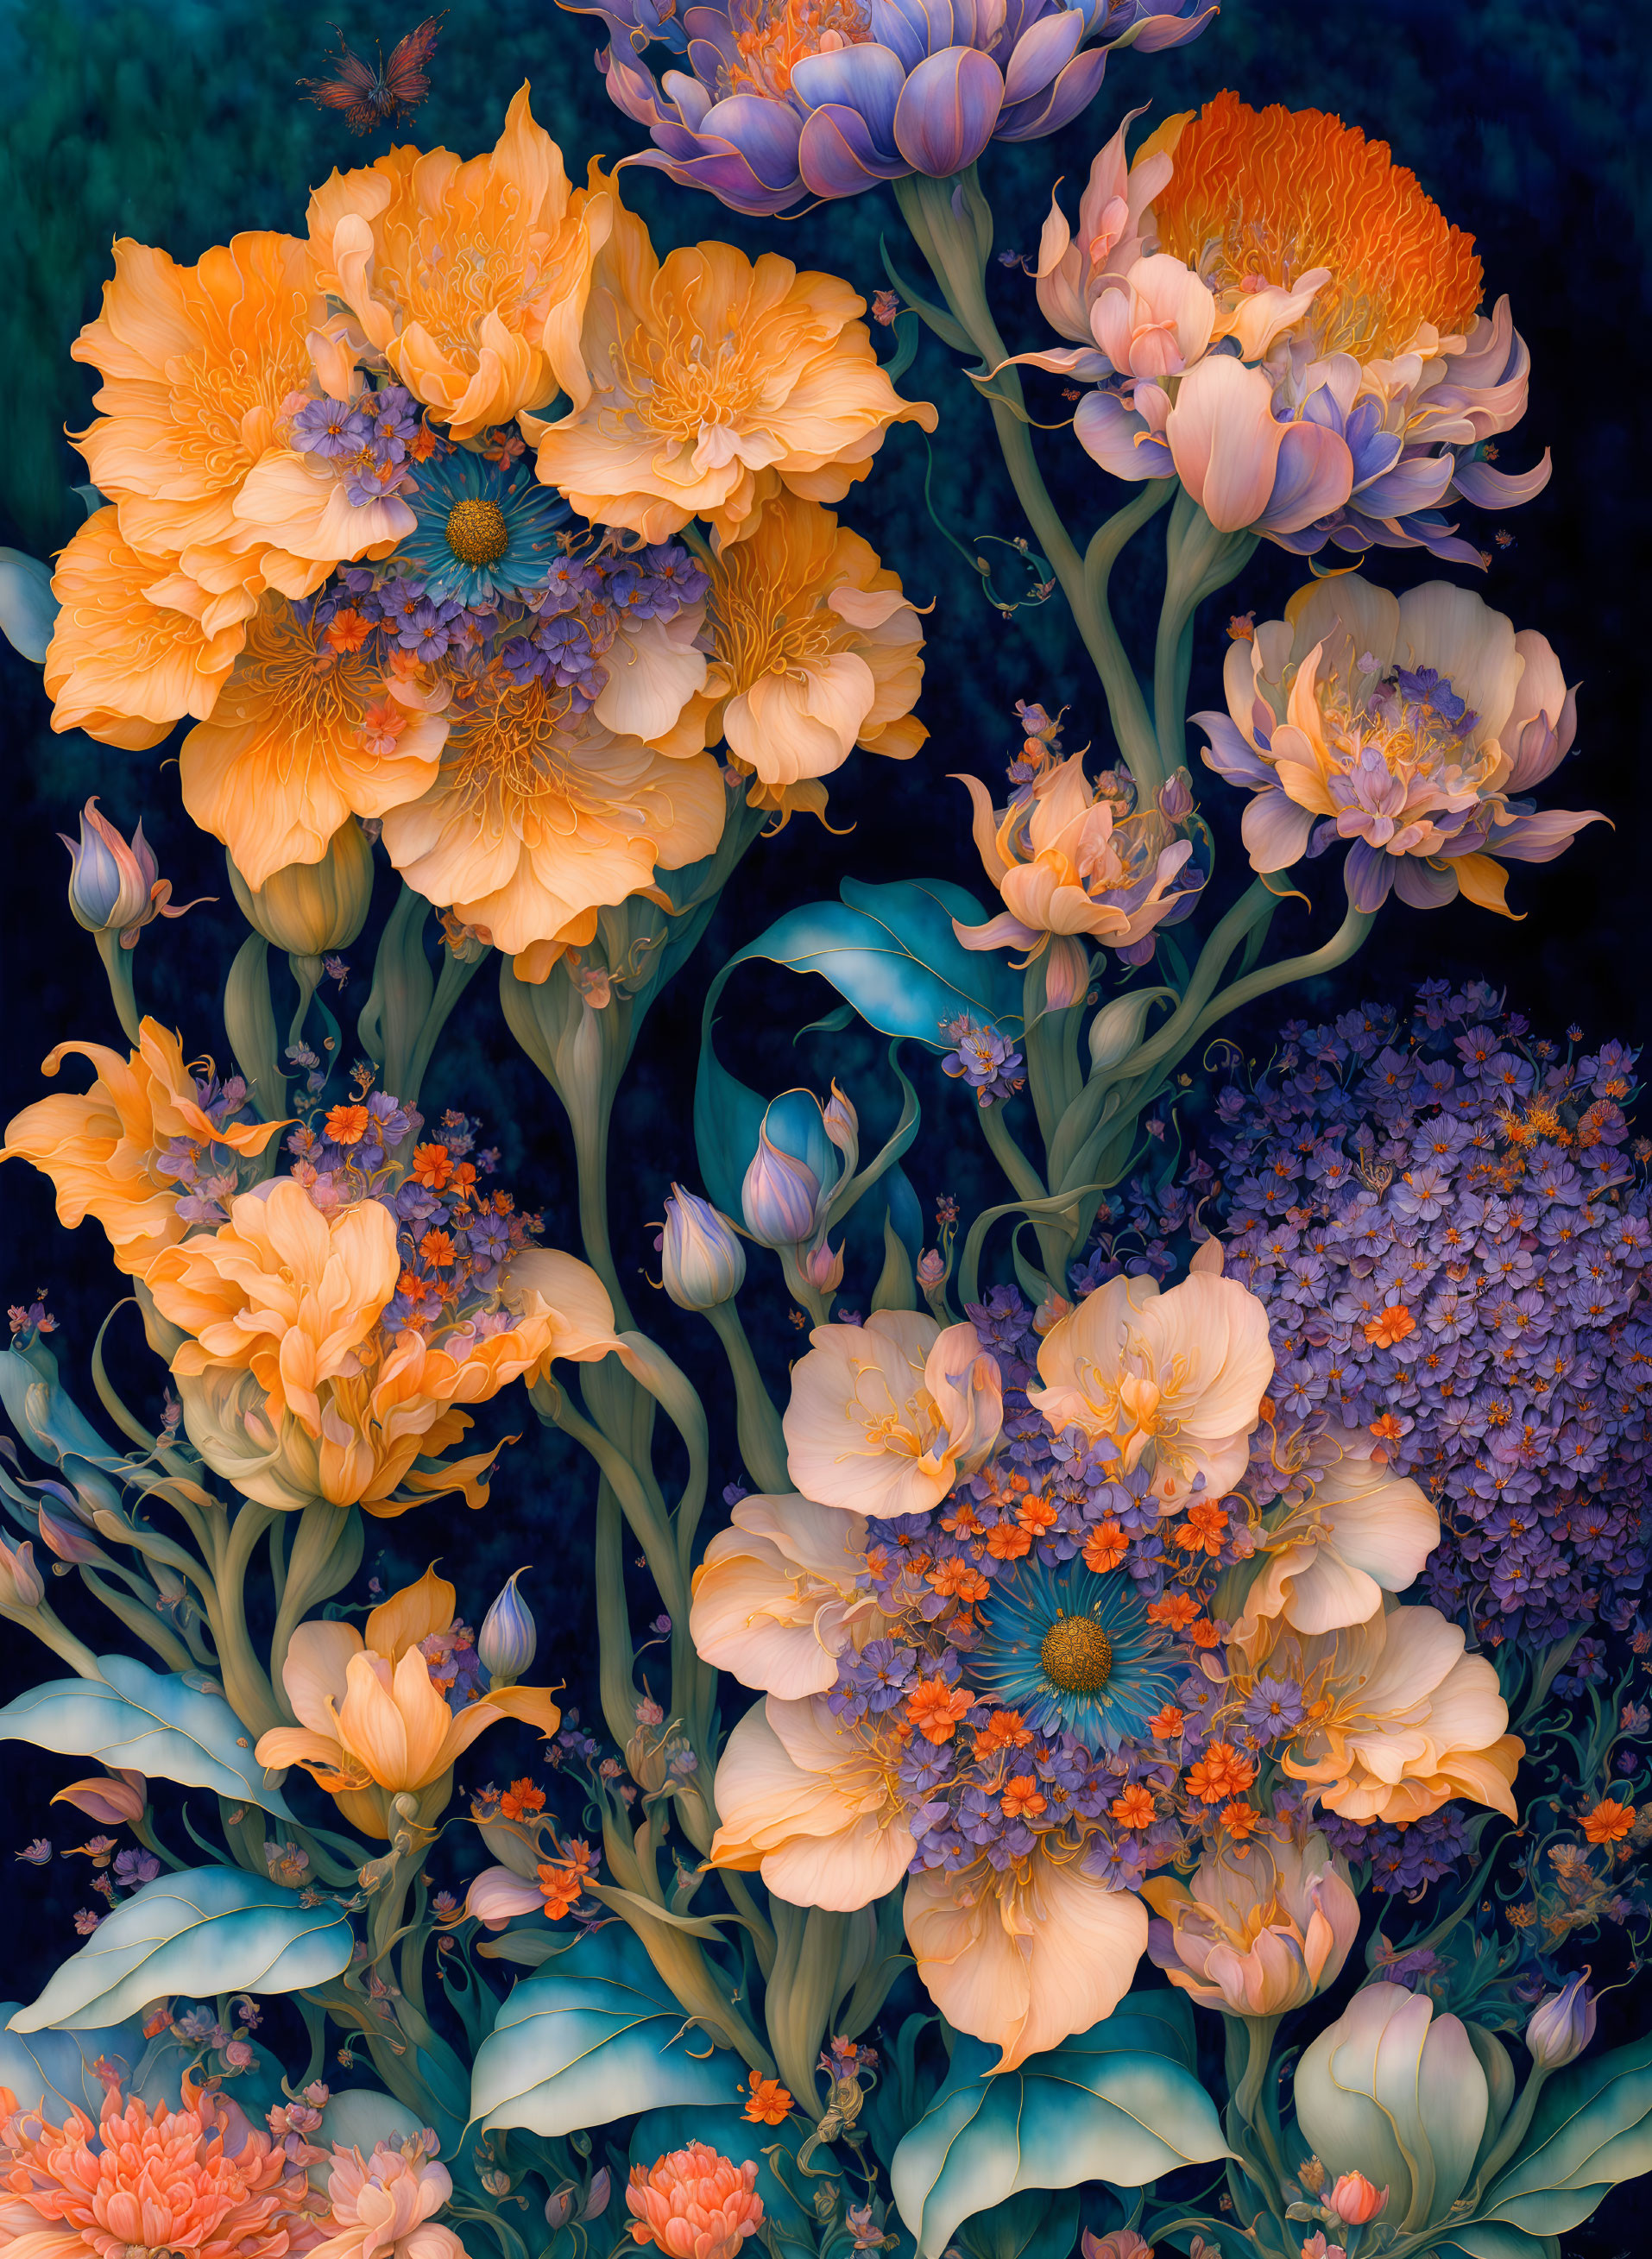 Vivid Orange and Purple Floral Arrangement on Dark Background